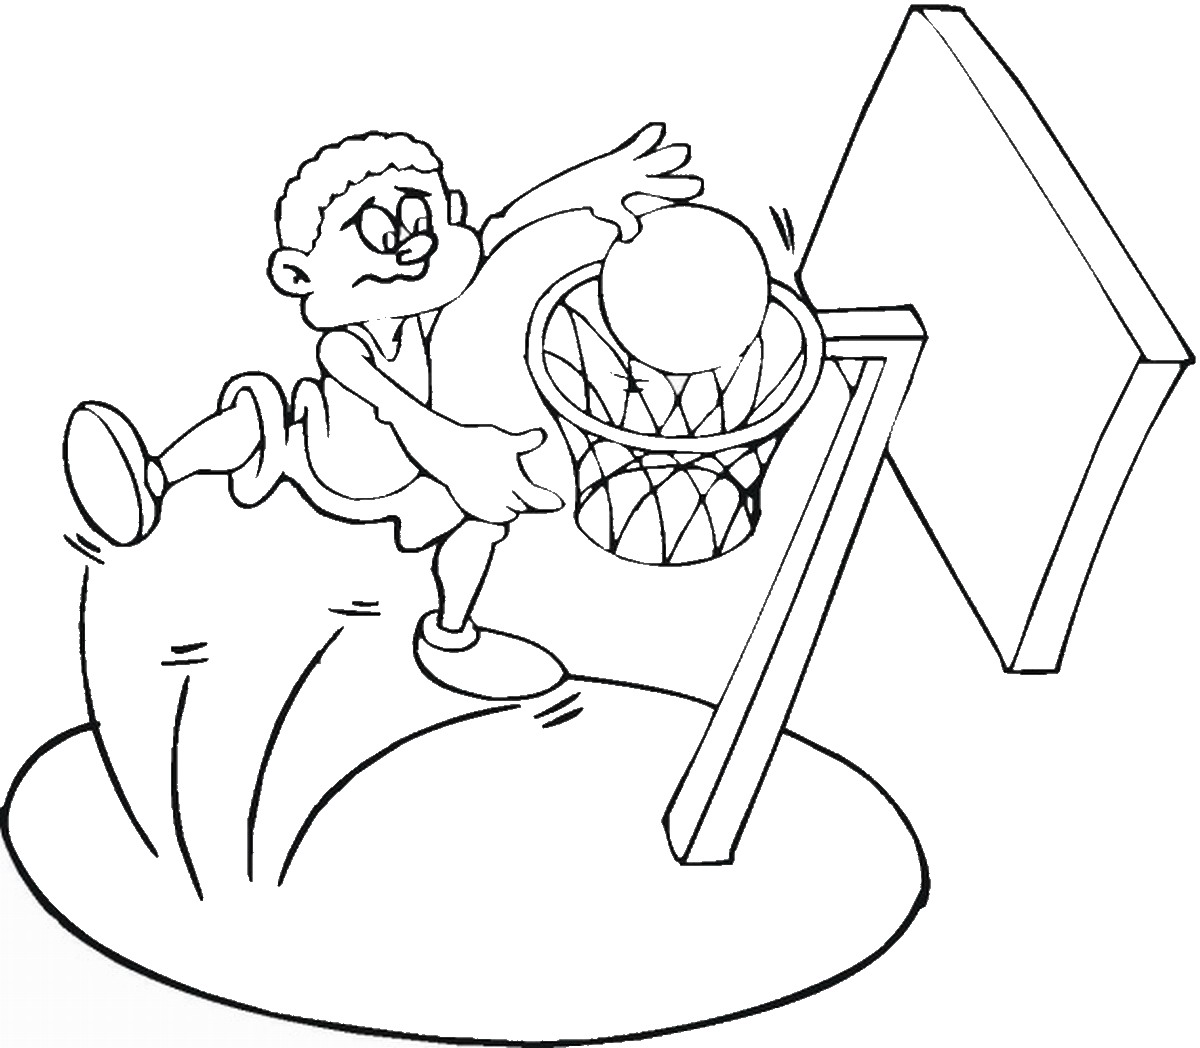 Рисунок на тему баскетбол легкий